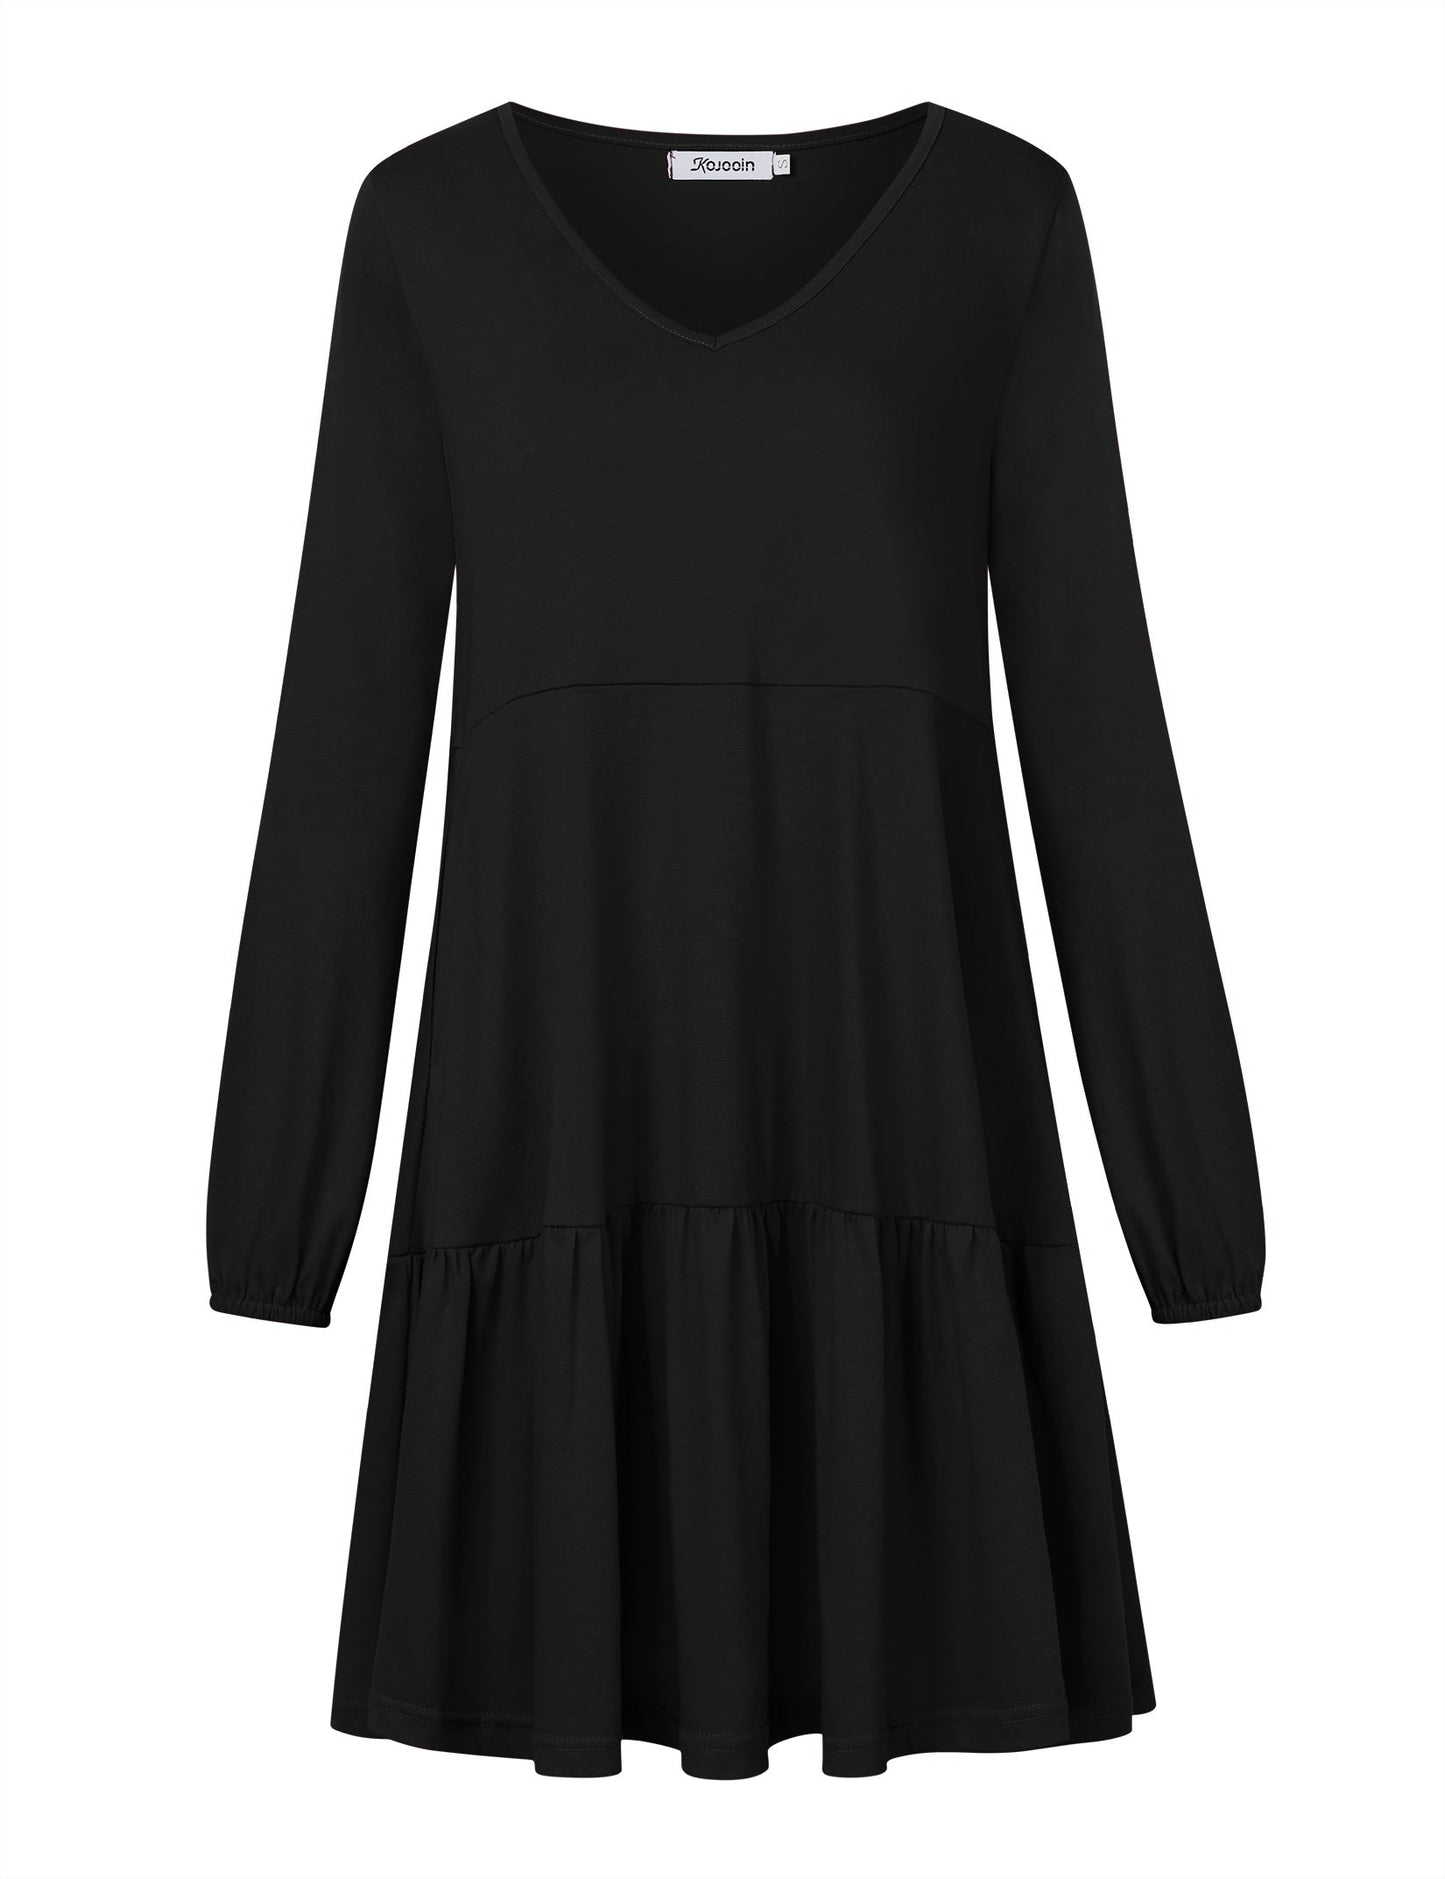 YESFASHION Women's V Neck Layered Dress Long Sleeve Dress Black